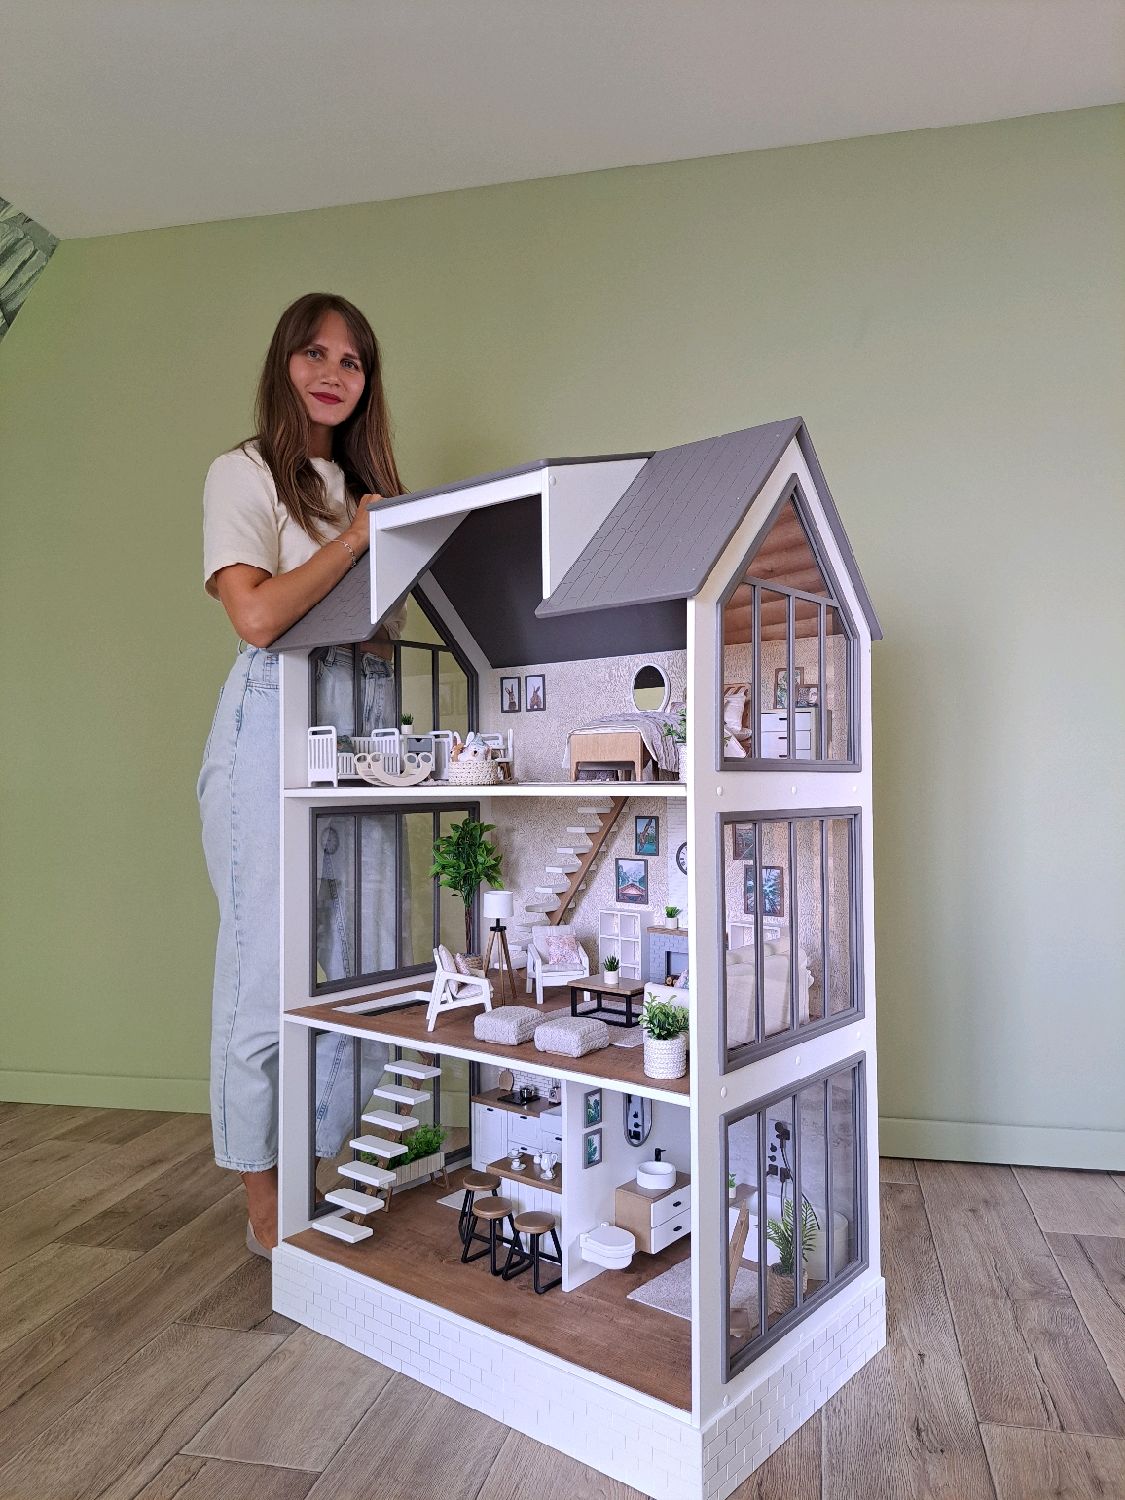 Кукольный домик — купить в Москве, цена на кукольный дом для девочки в rov-hyundai.ru